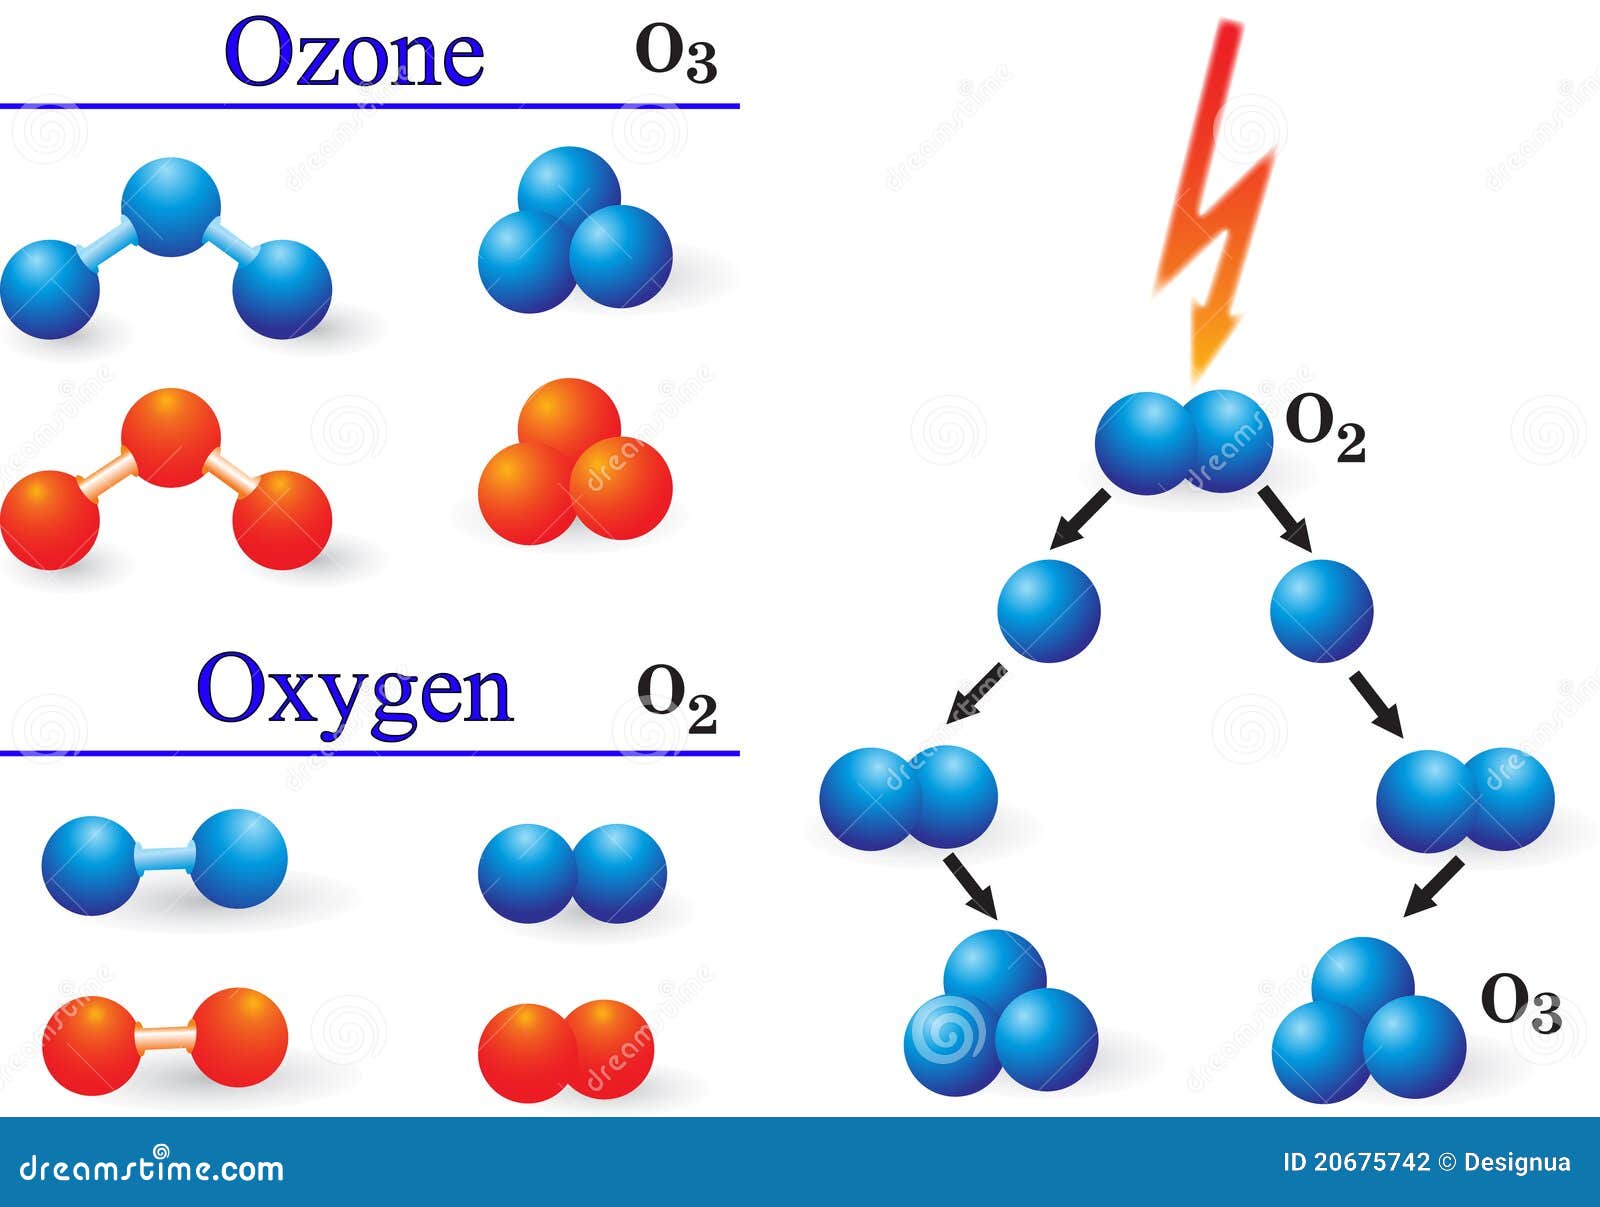 В 4 молекулах кислорода содержится